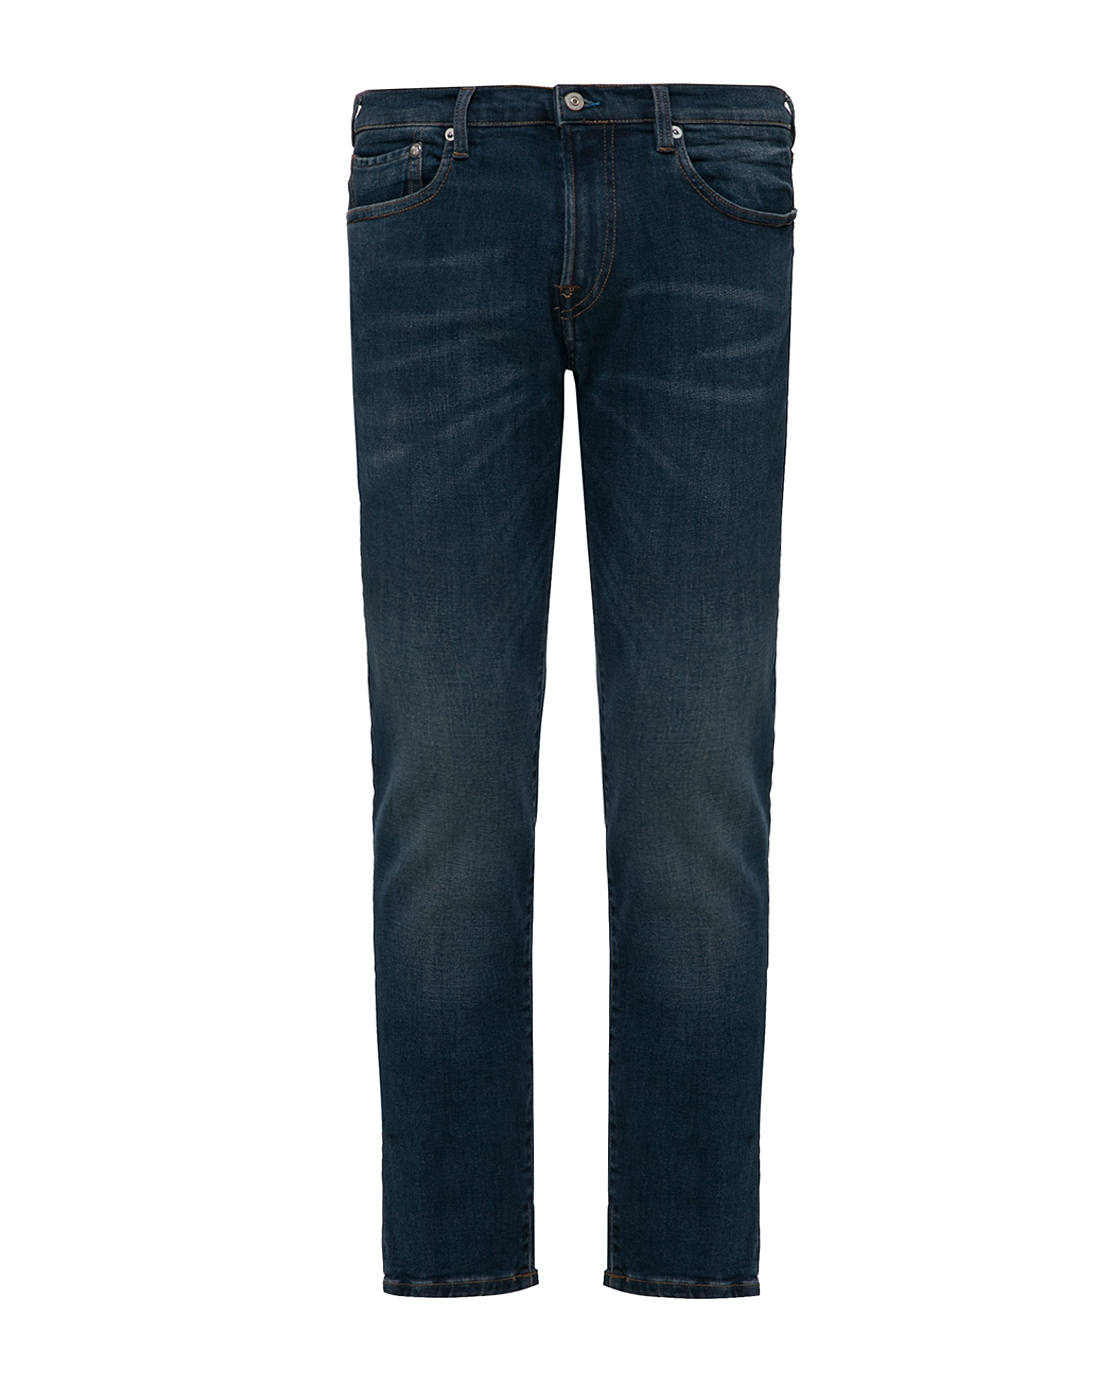 Чоловічі сині джинси Slim Standard-1